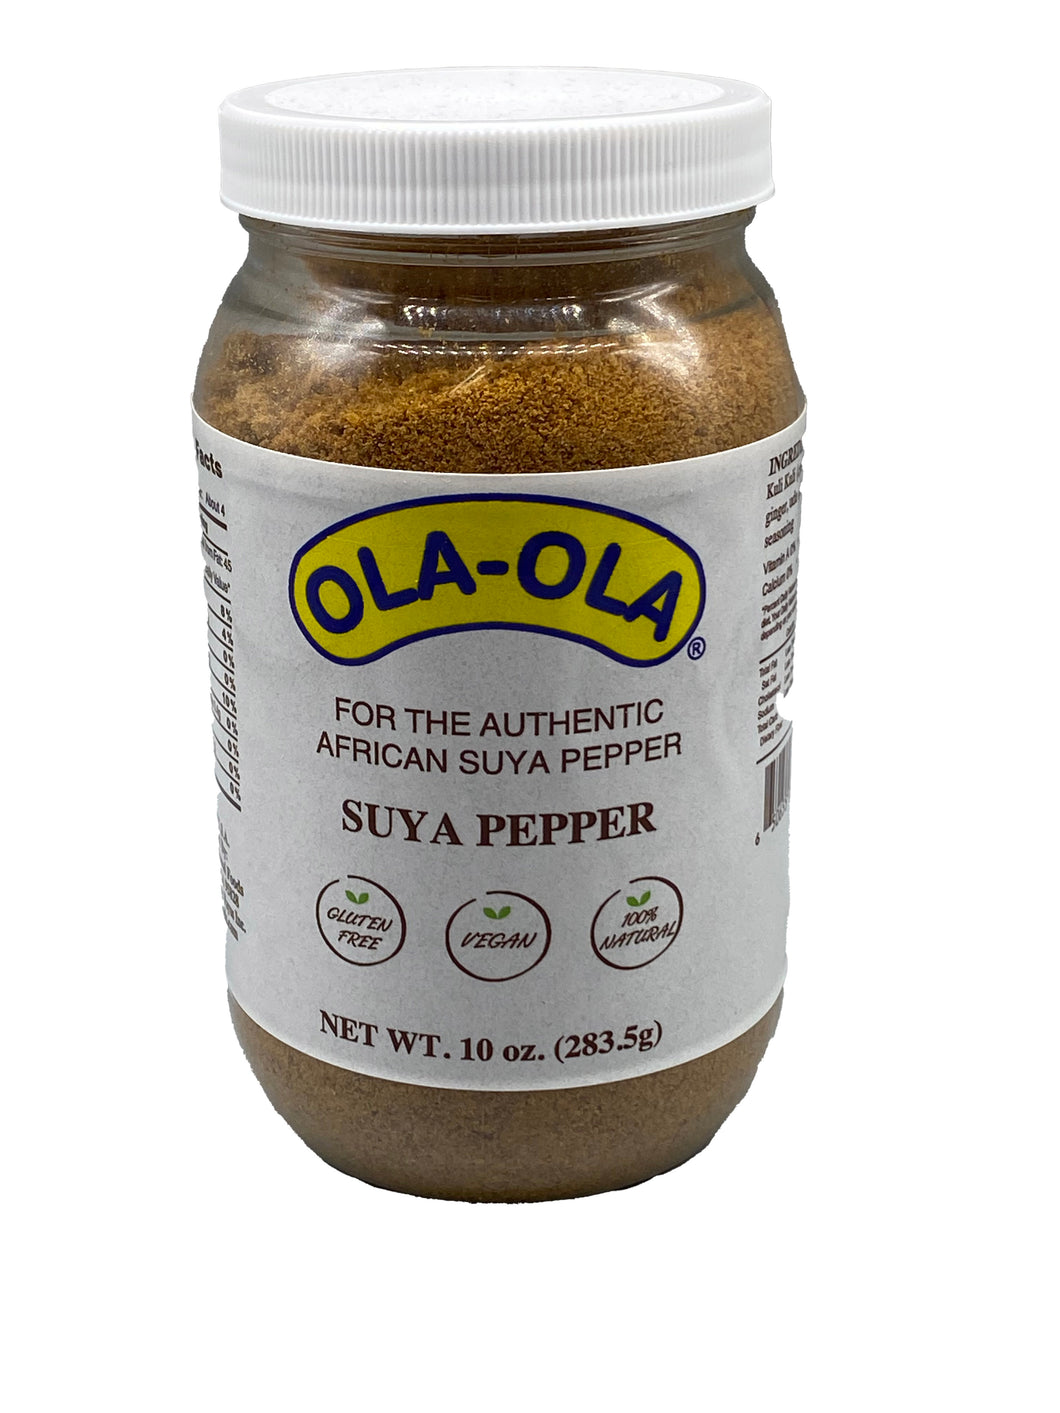 Ola-Ola Suya Pepper